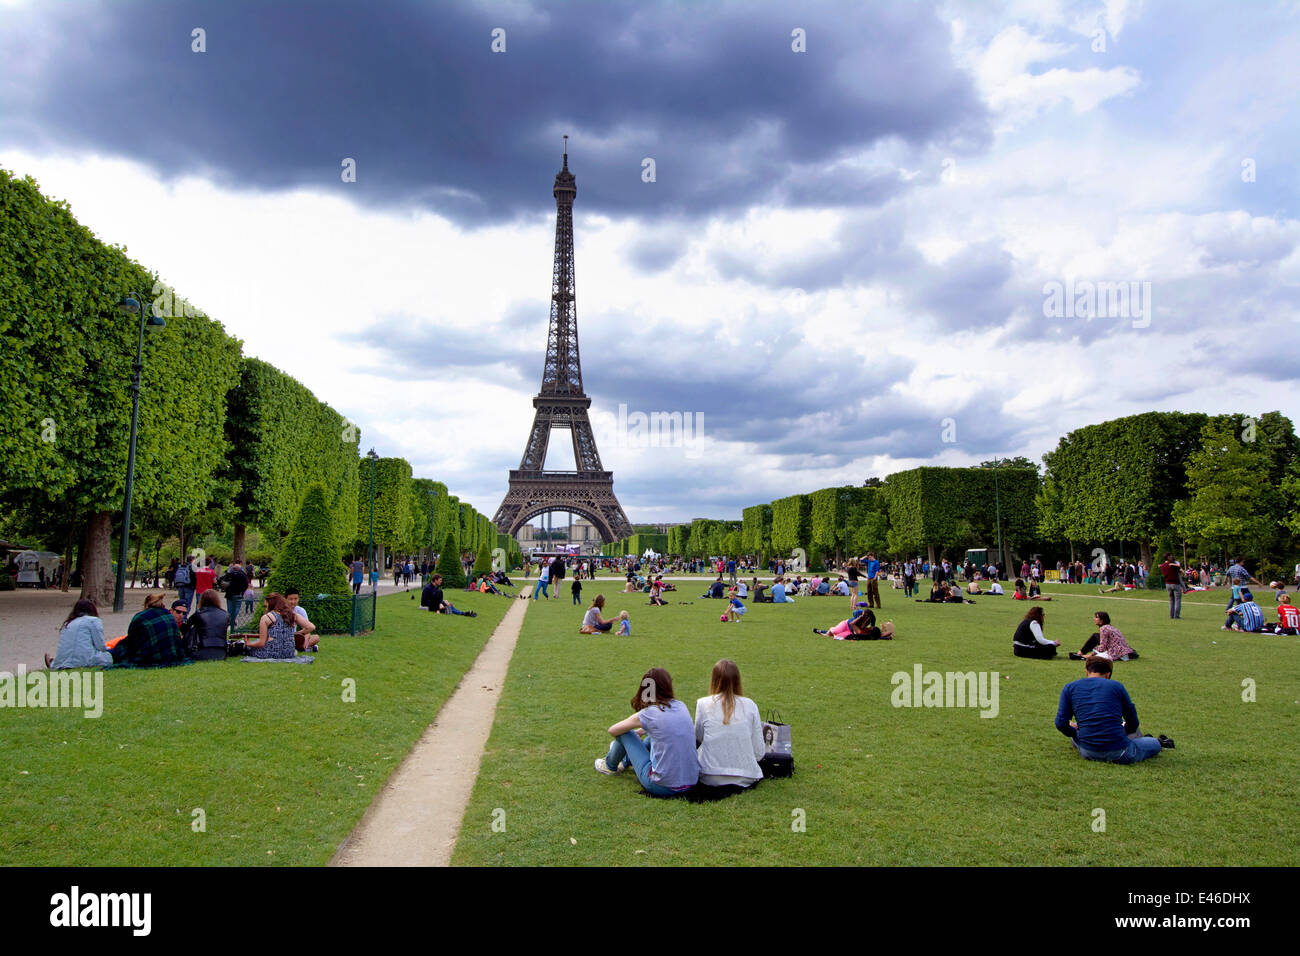 La Tour Eiffel et du parc du Champ de Mars avec les touristes, Paris, France Banque D'Images